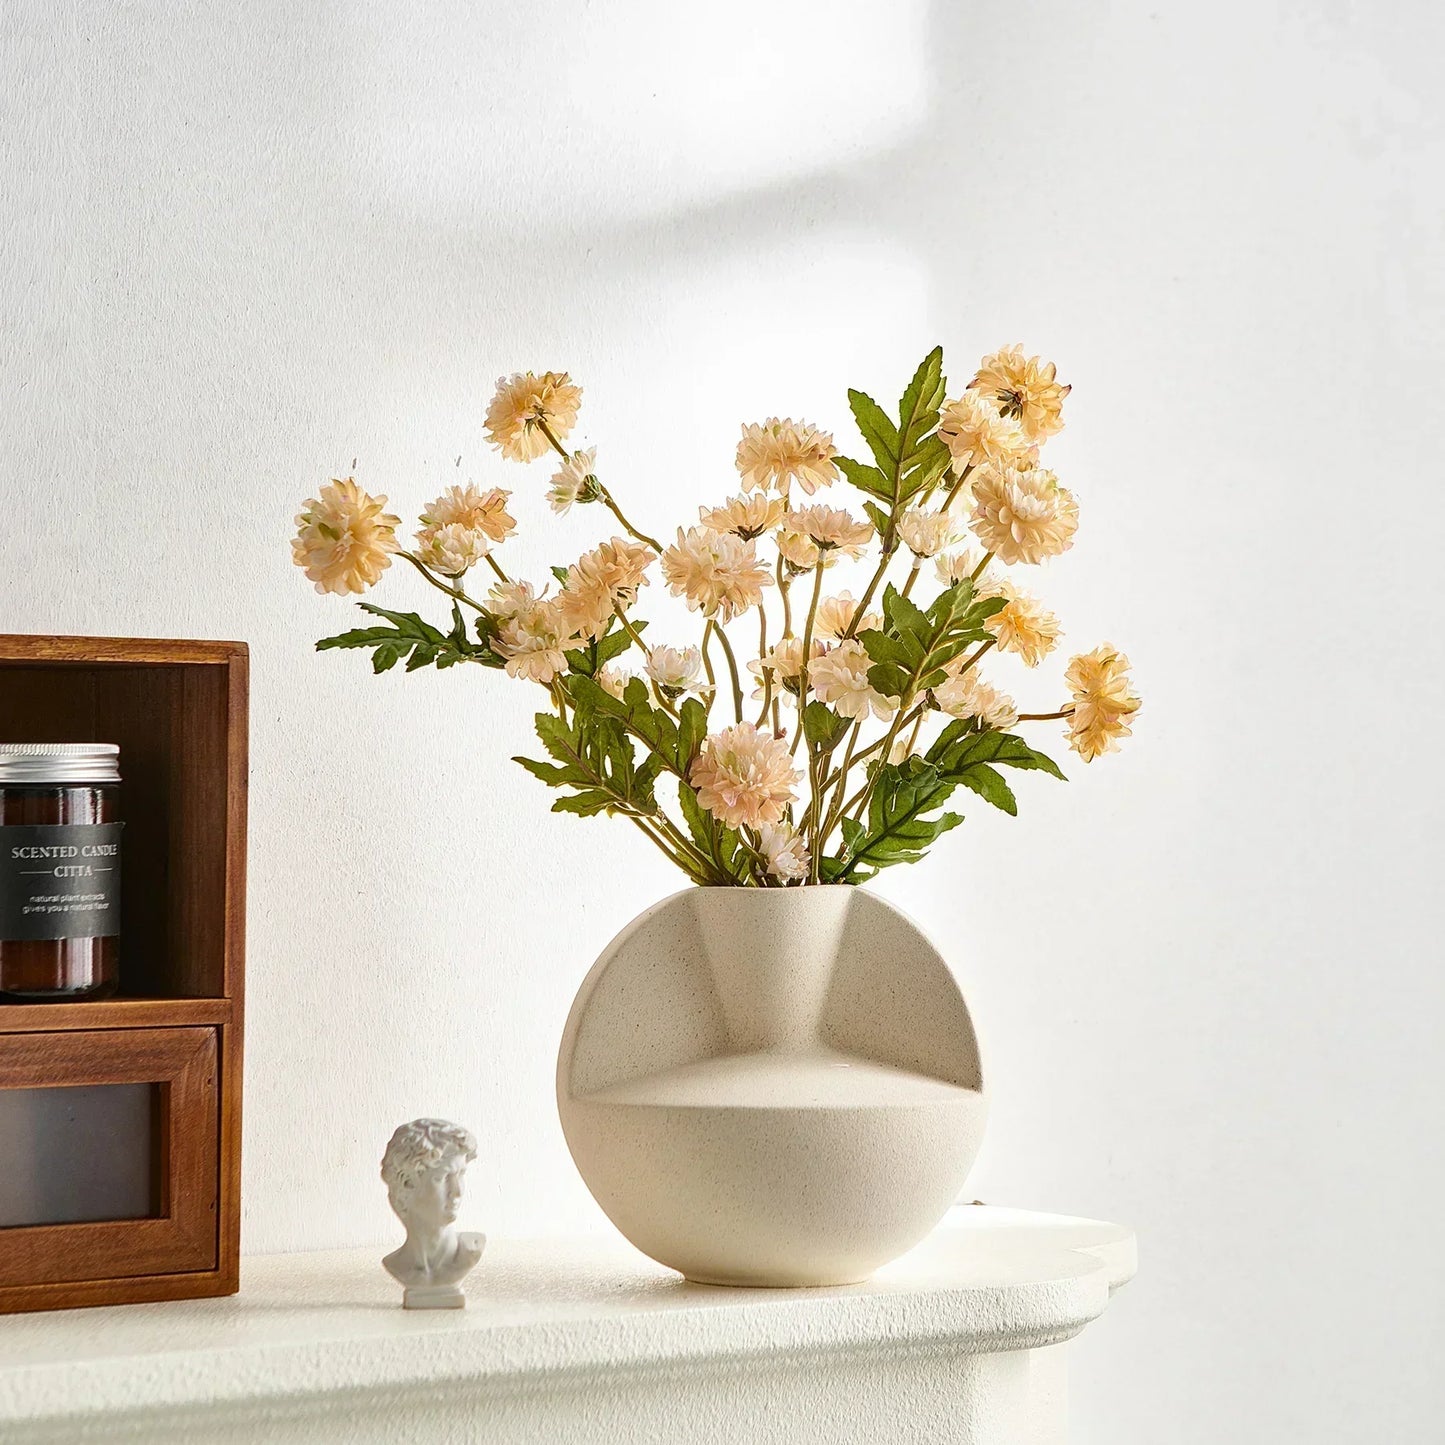 Home Decor Ceramic Vase for Living Room Decoration Accessories Modern Art Flower Arrangement Desktop Ornaments Porcelain Crafts